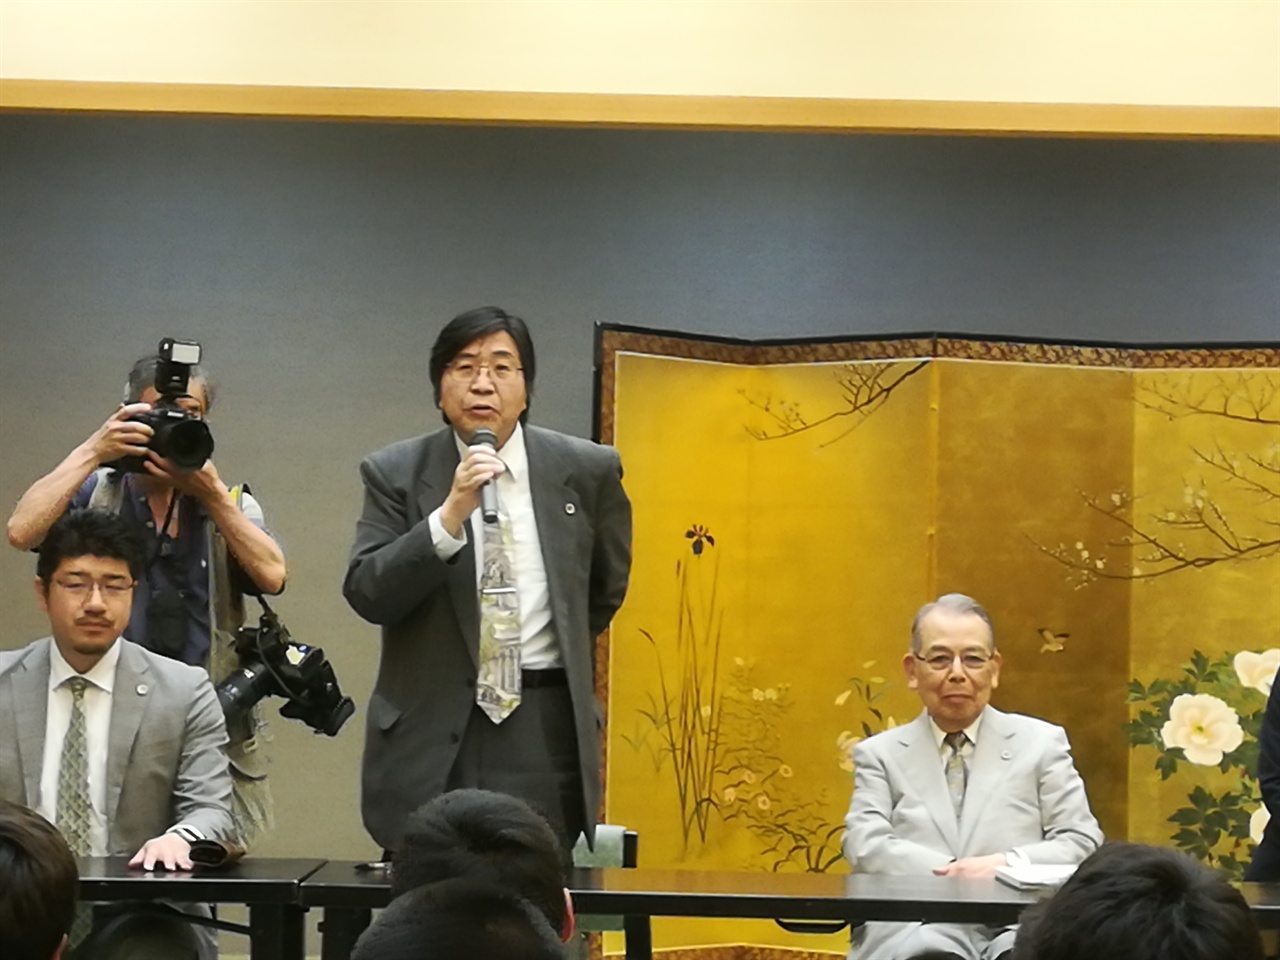 "이 재판은 일본사회의 북한에 대한 편견이 고스란히 드러난 재판이다"라고 말하는 변호인단 나카타니 유지 변호사